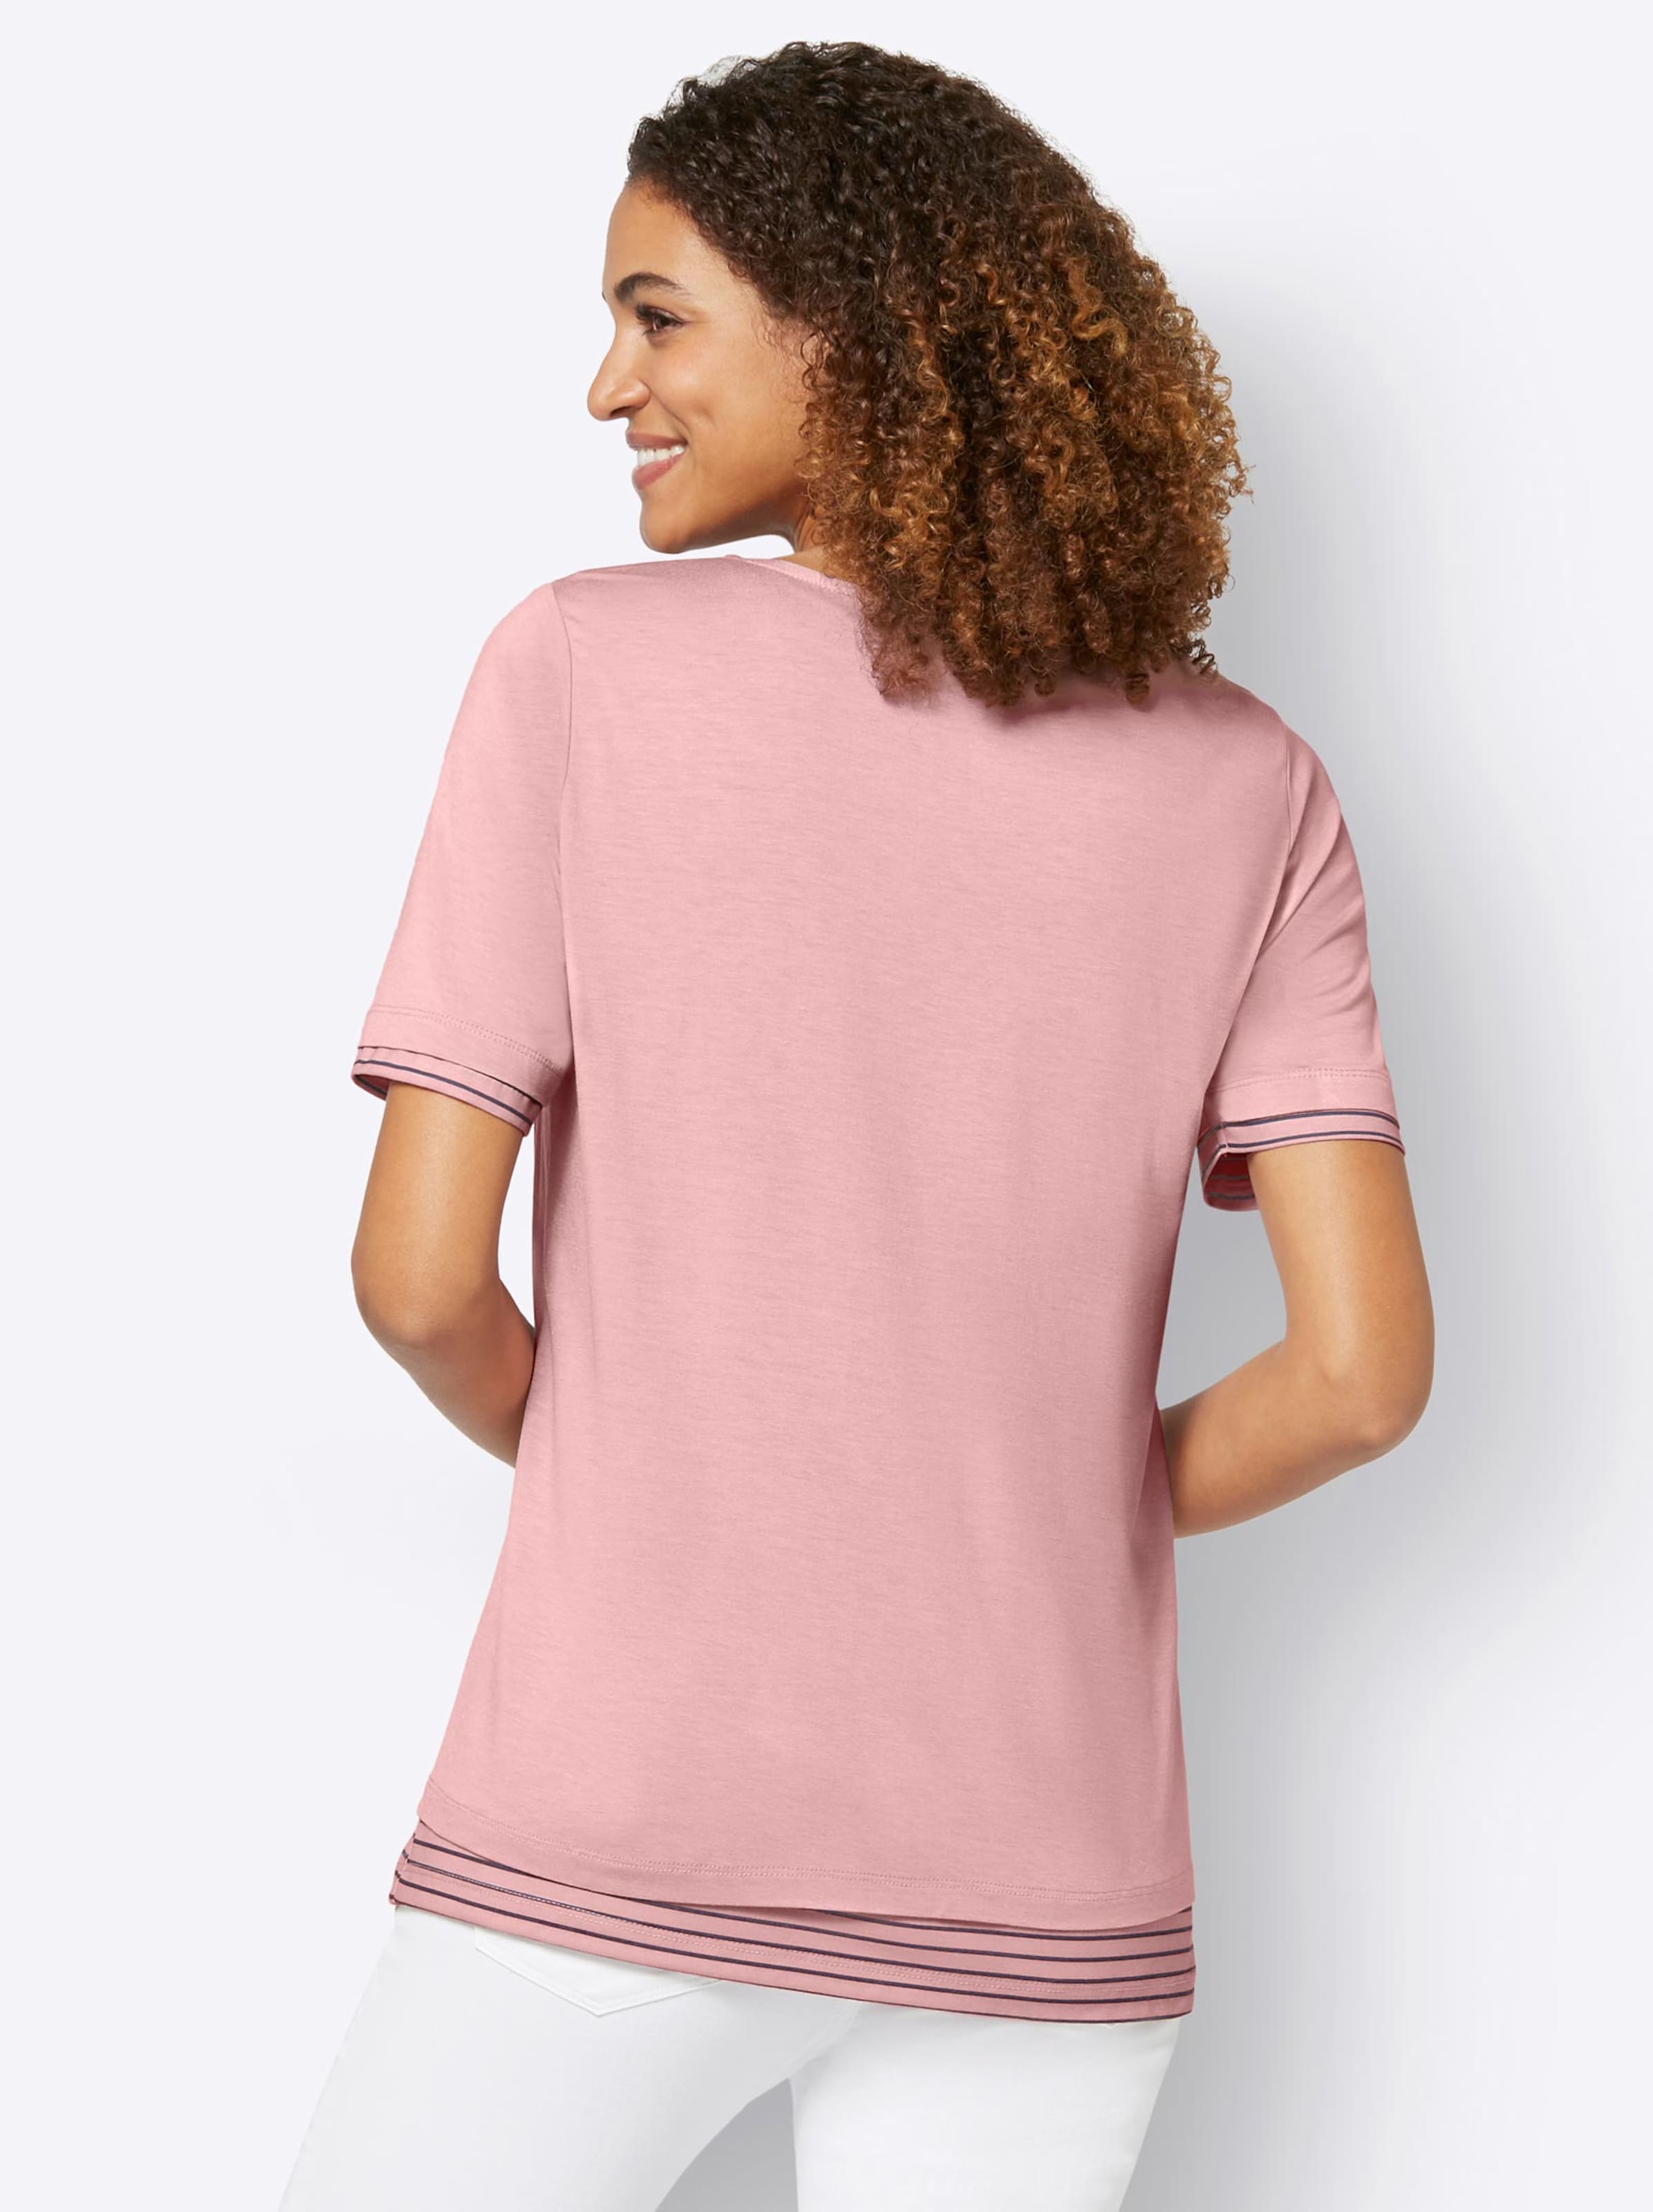 Damenmode Shirts 2-in-1-Shirt in rosenquarz 